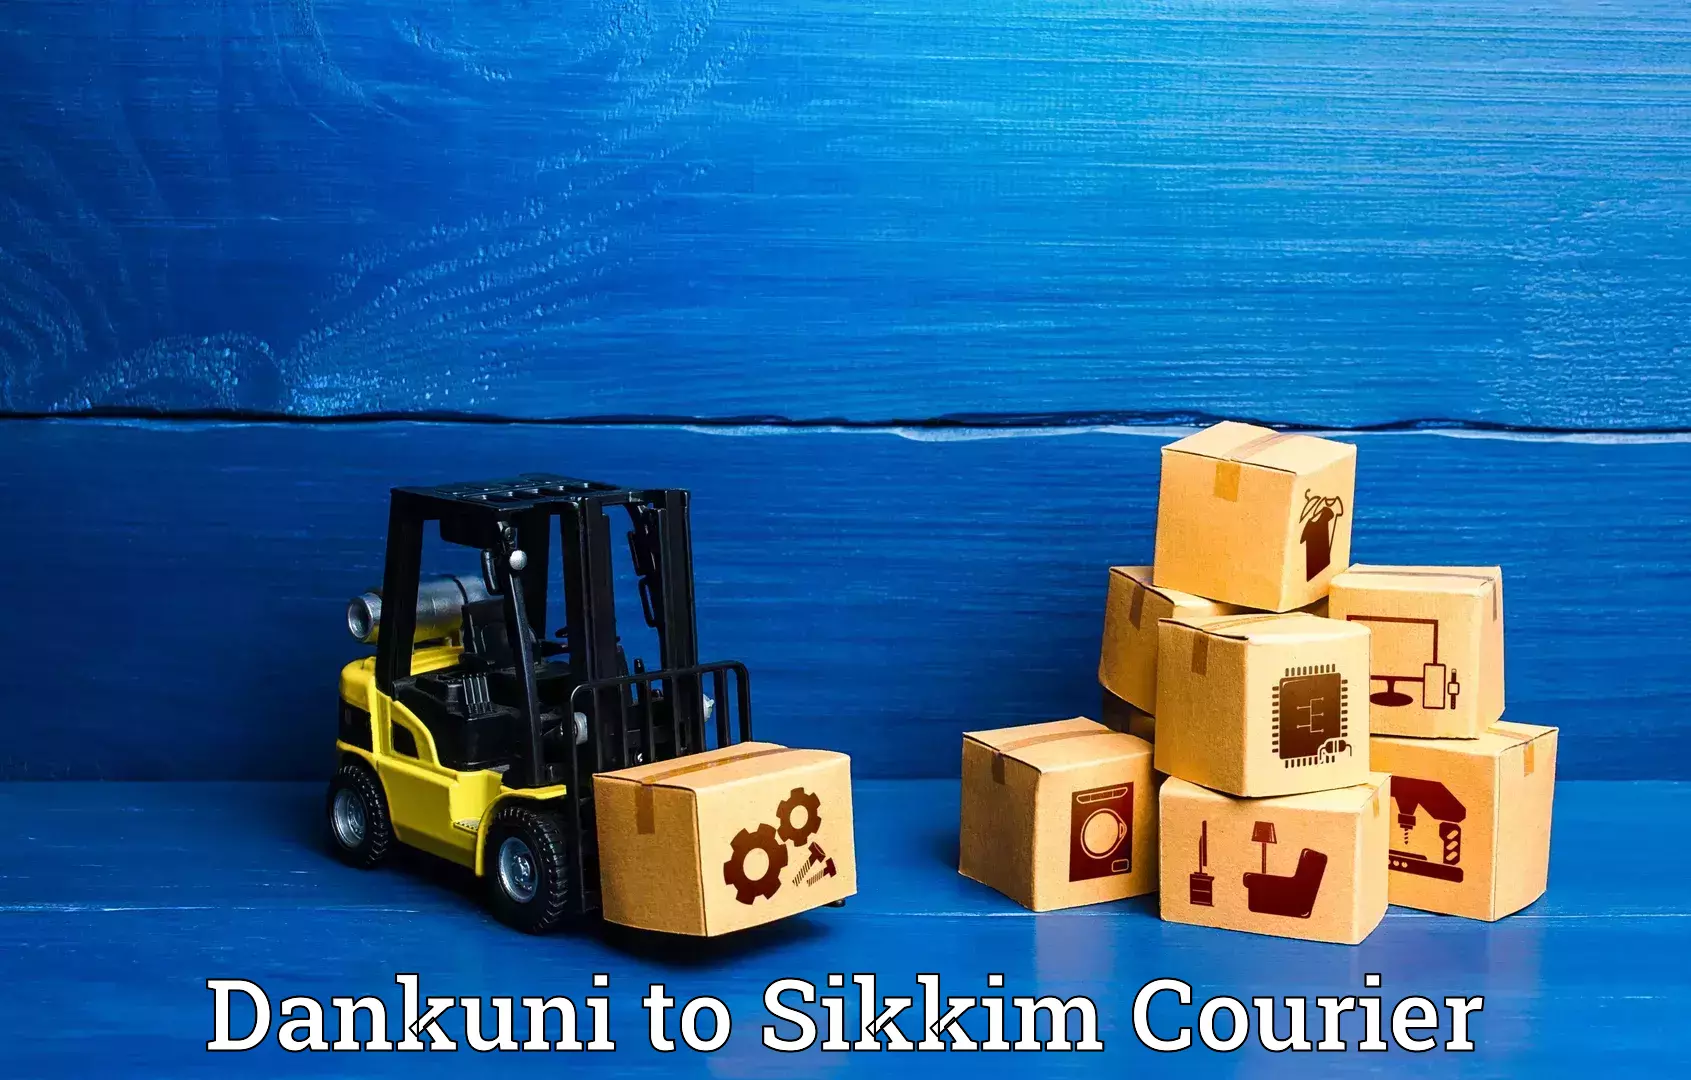 Luggage transport service Dankuni to Sikkim